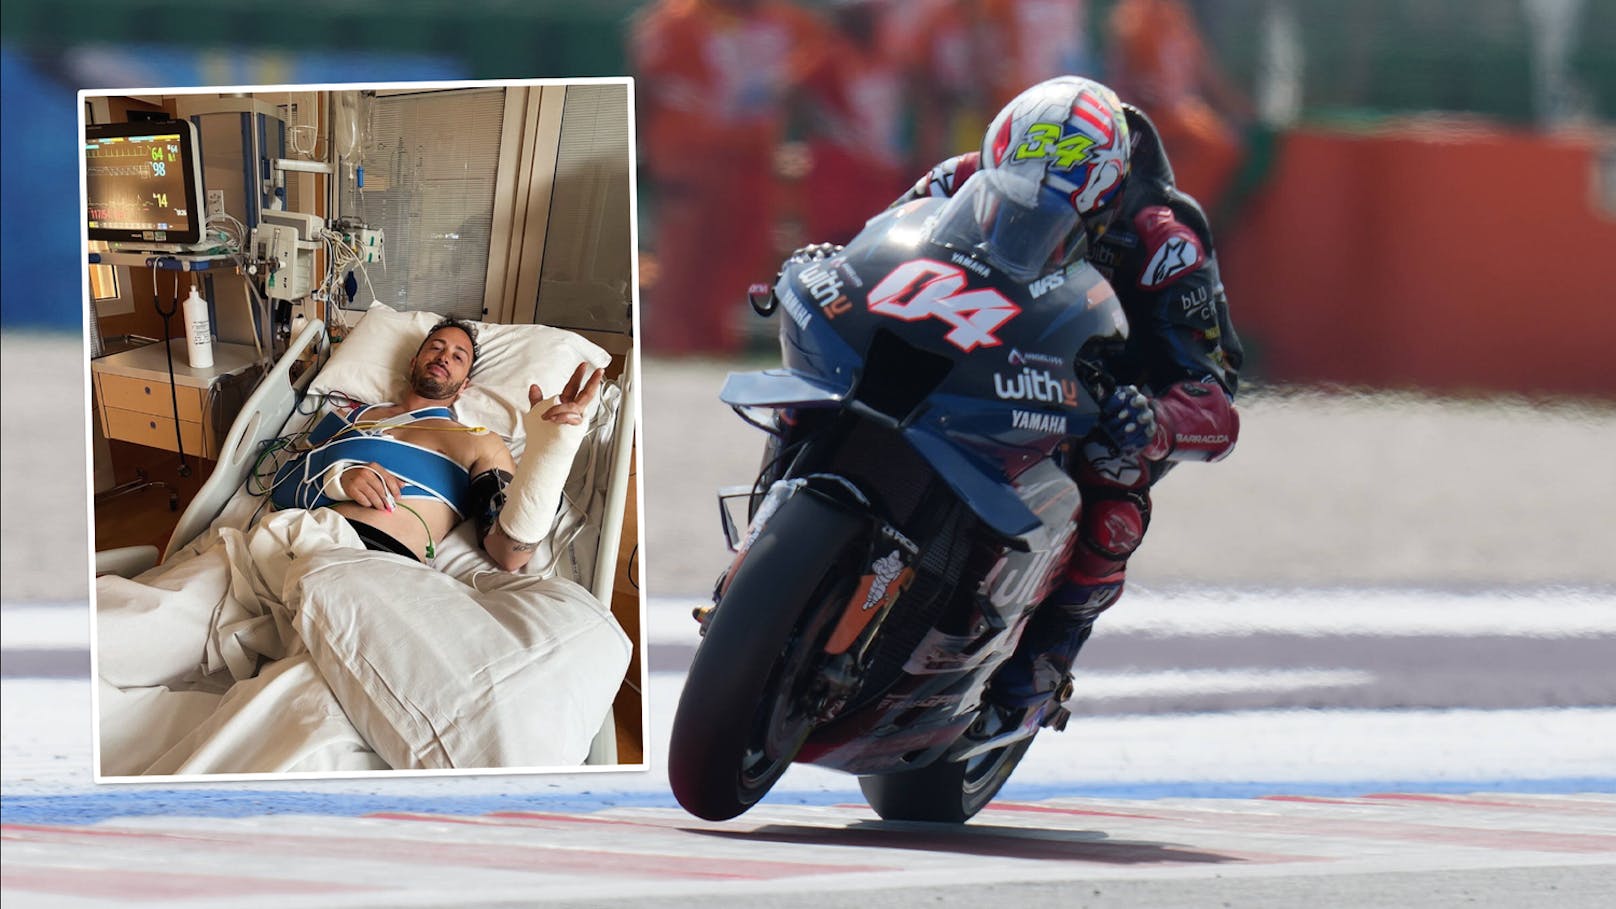 MotoGP-Star meldet sich nach schwerem Crash